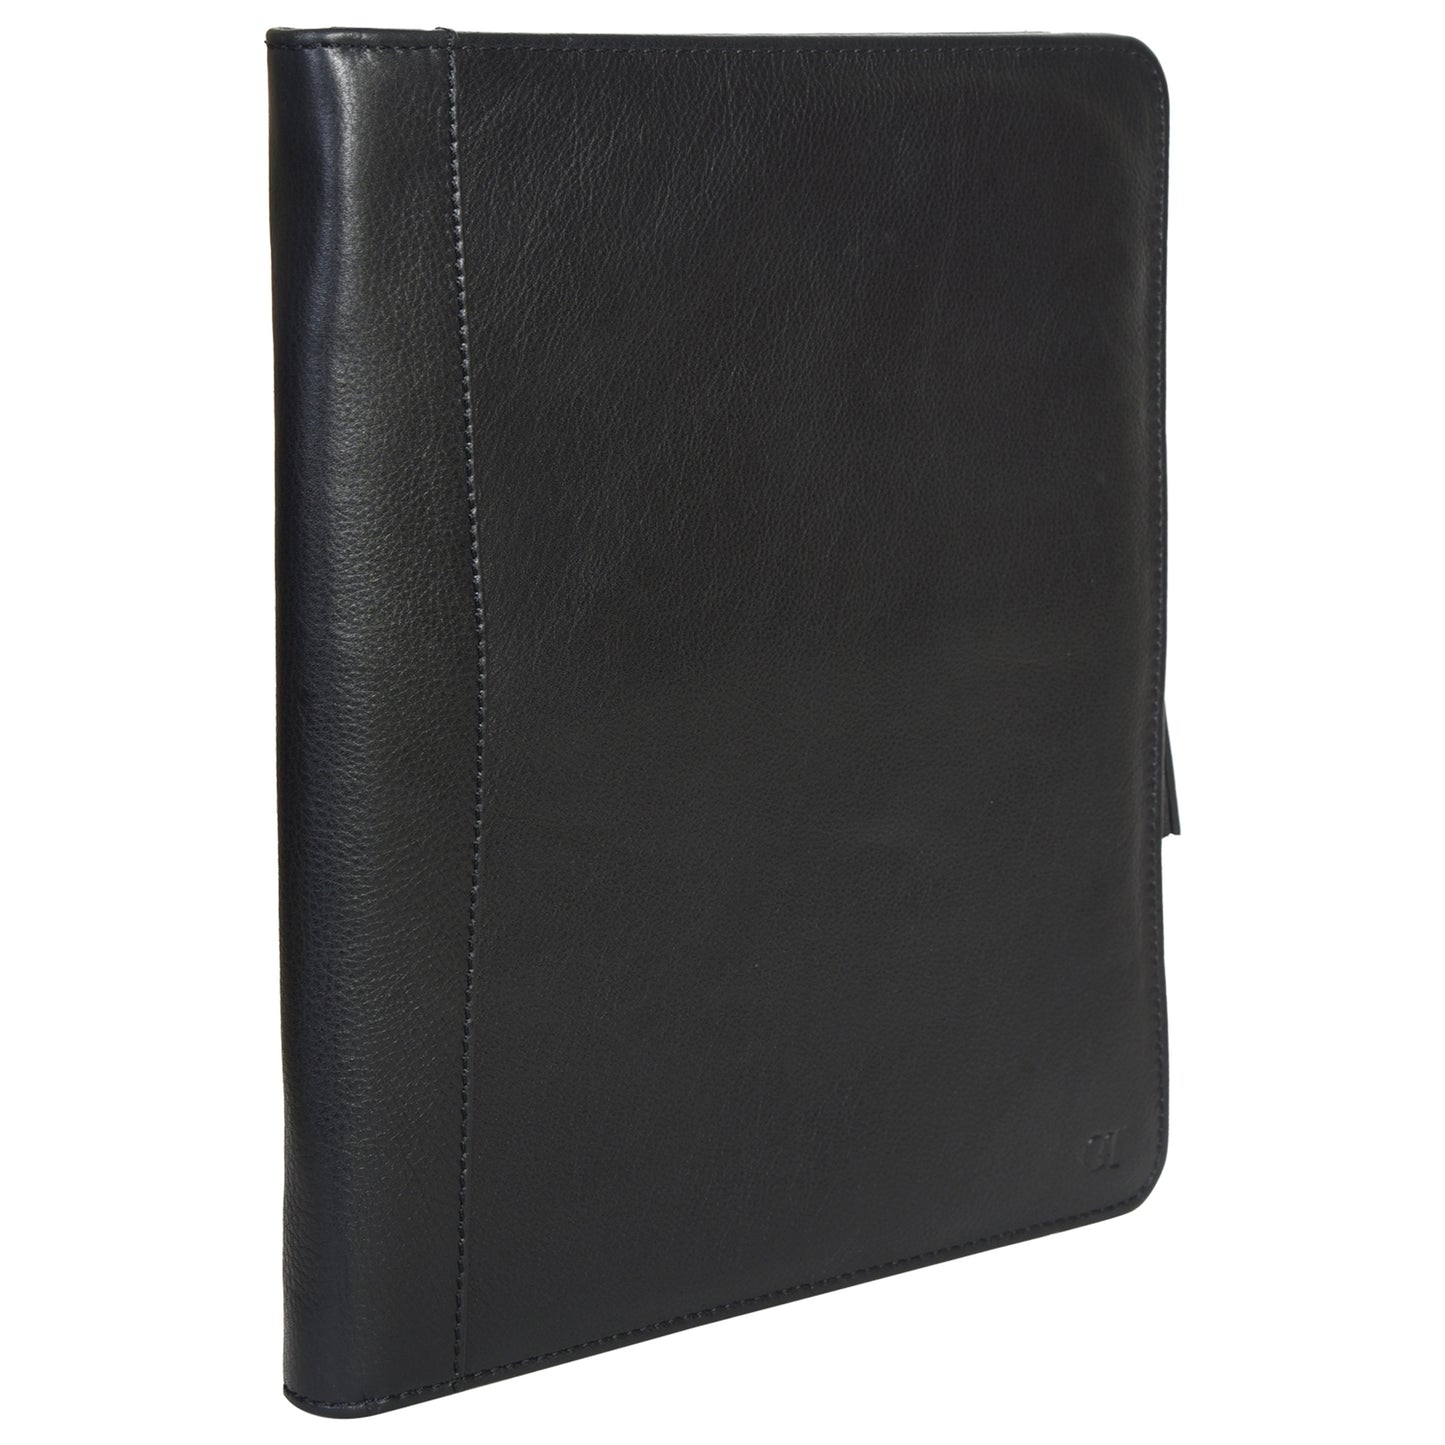 G&T Full-grain Leather Zip-round Underarm Folio, A4 Folio, Document/Certificate Holder